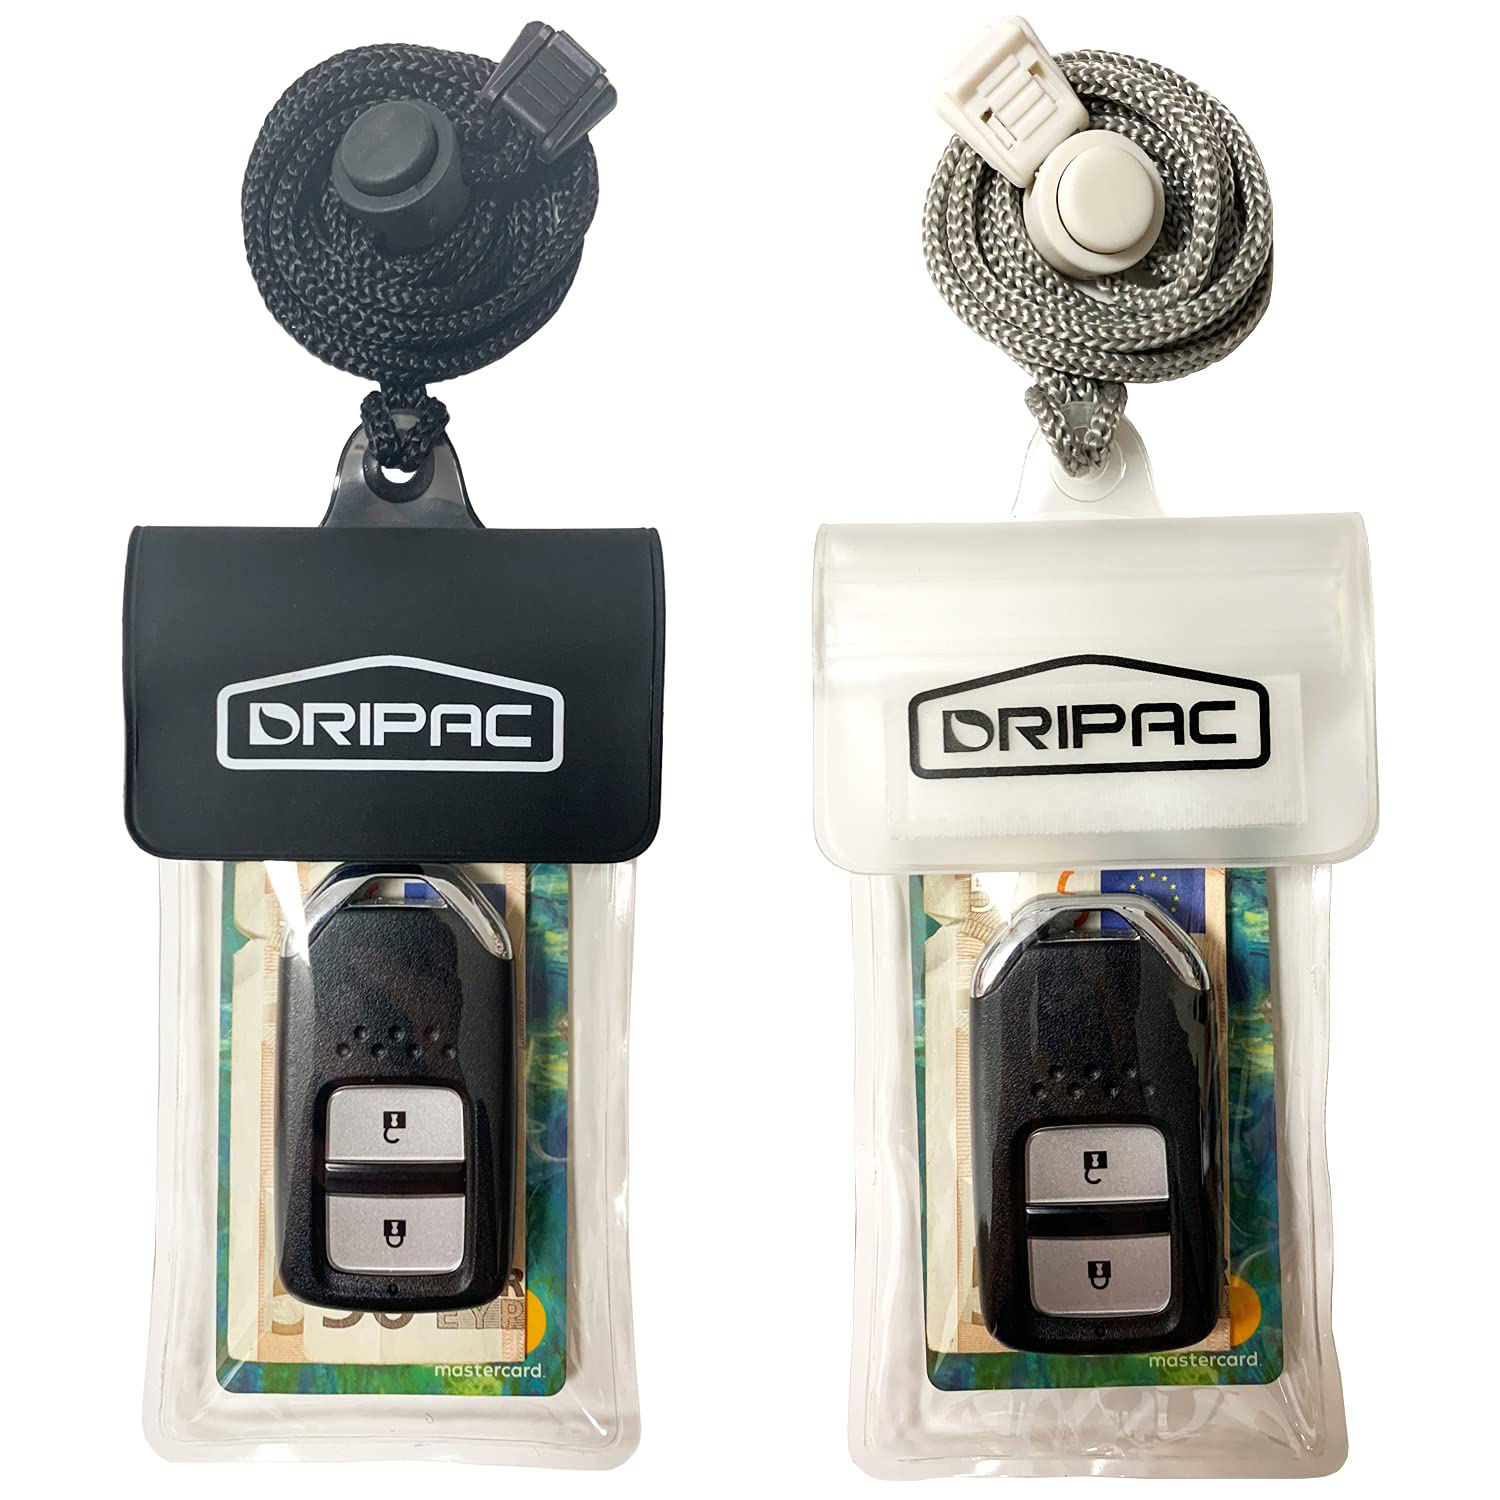 DRIPAC wasserdichte Schutzhülle für Autoschlüssel, wasserdicht, für Schlüssel, Ausweis, Kreditkarten, Geld (schwarz + weiß) von DRIPAC